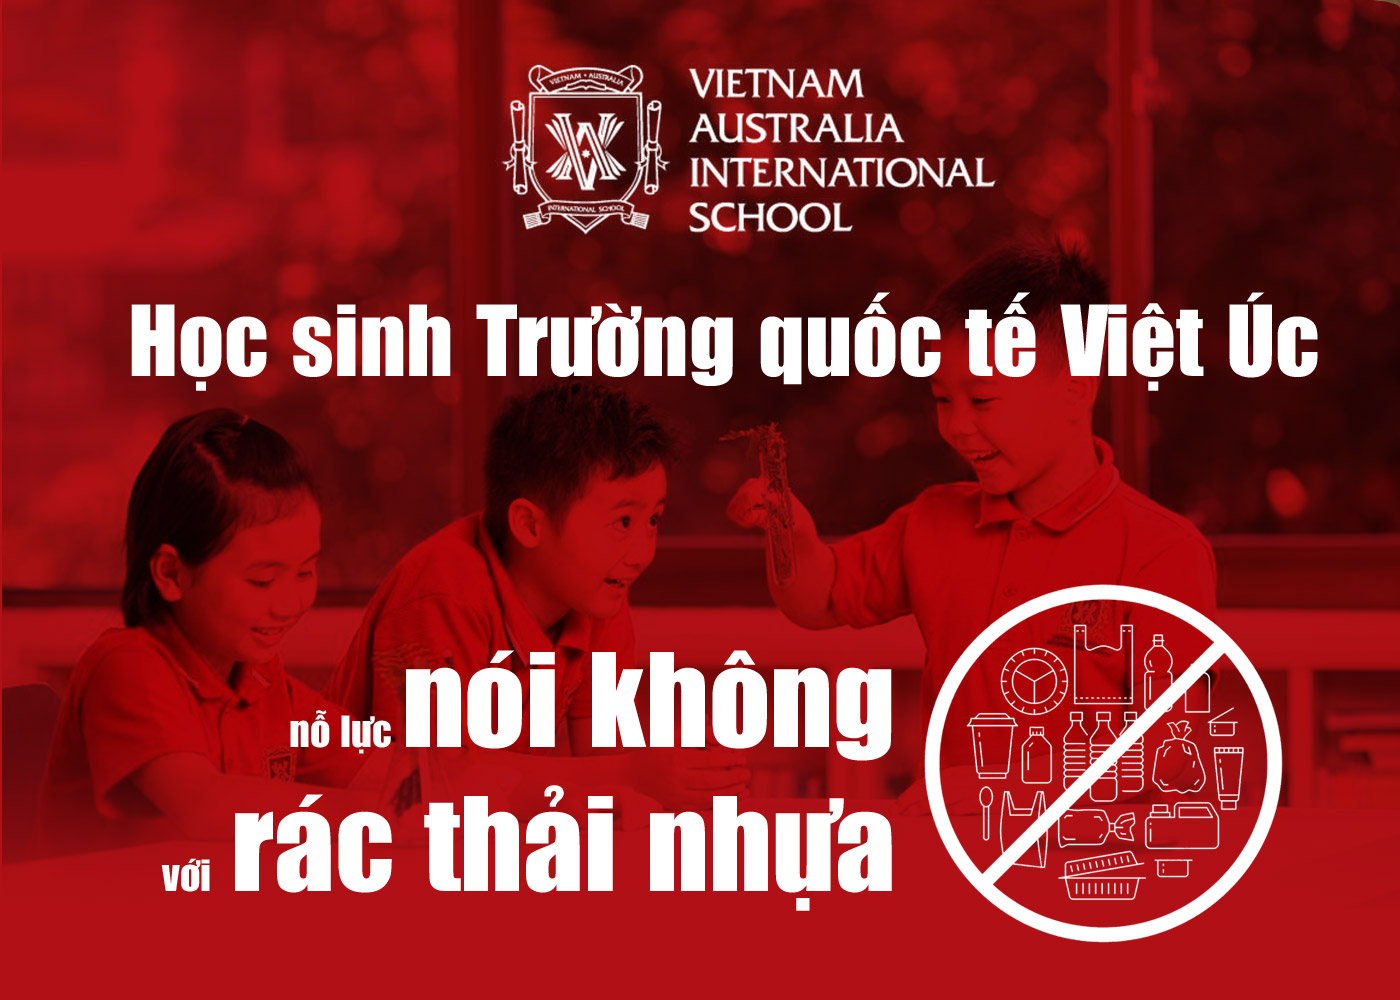 Học sinh Trường quốc tế Việt Úc nỗ lực nói không với rác thải nhựa - Ảnh 1